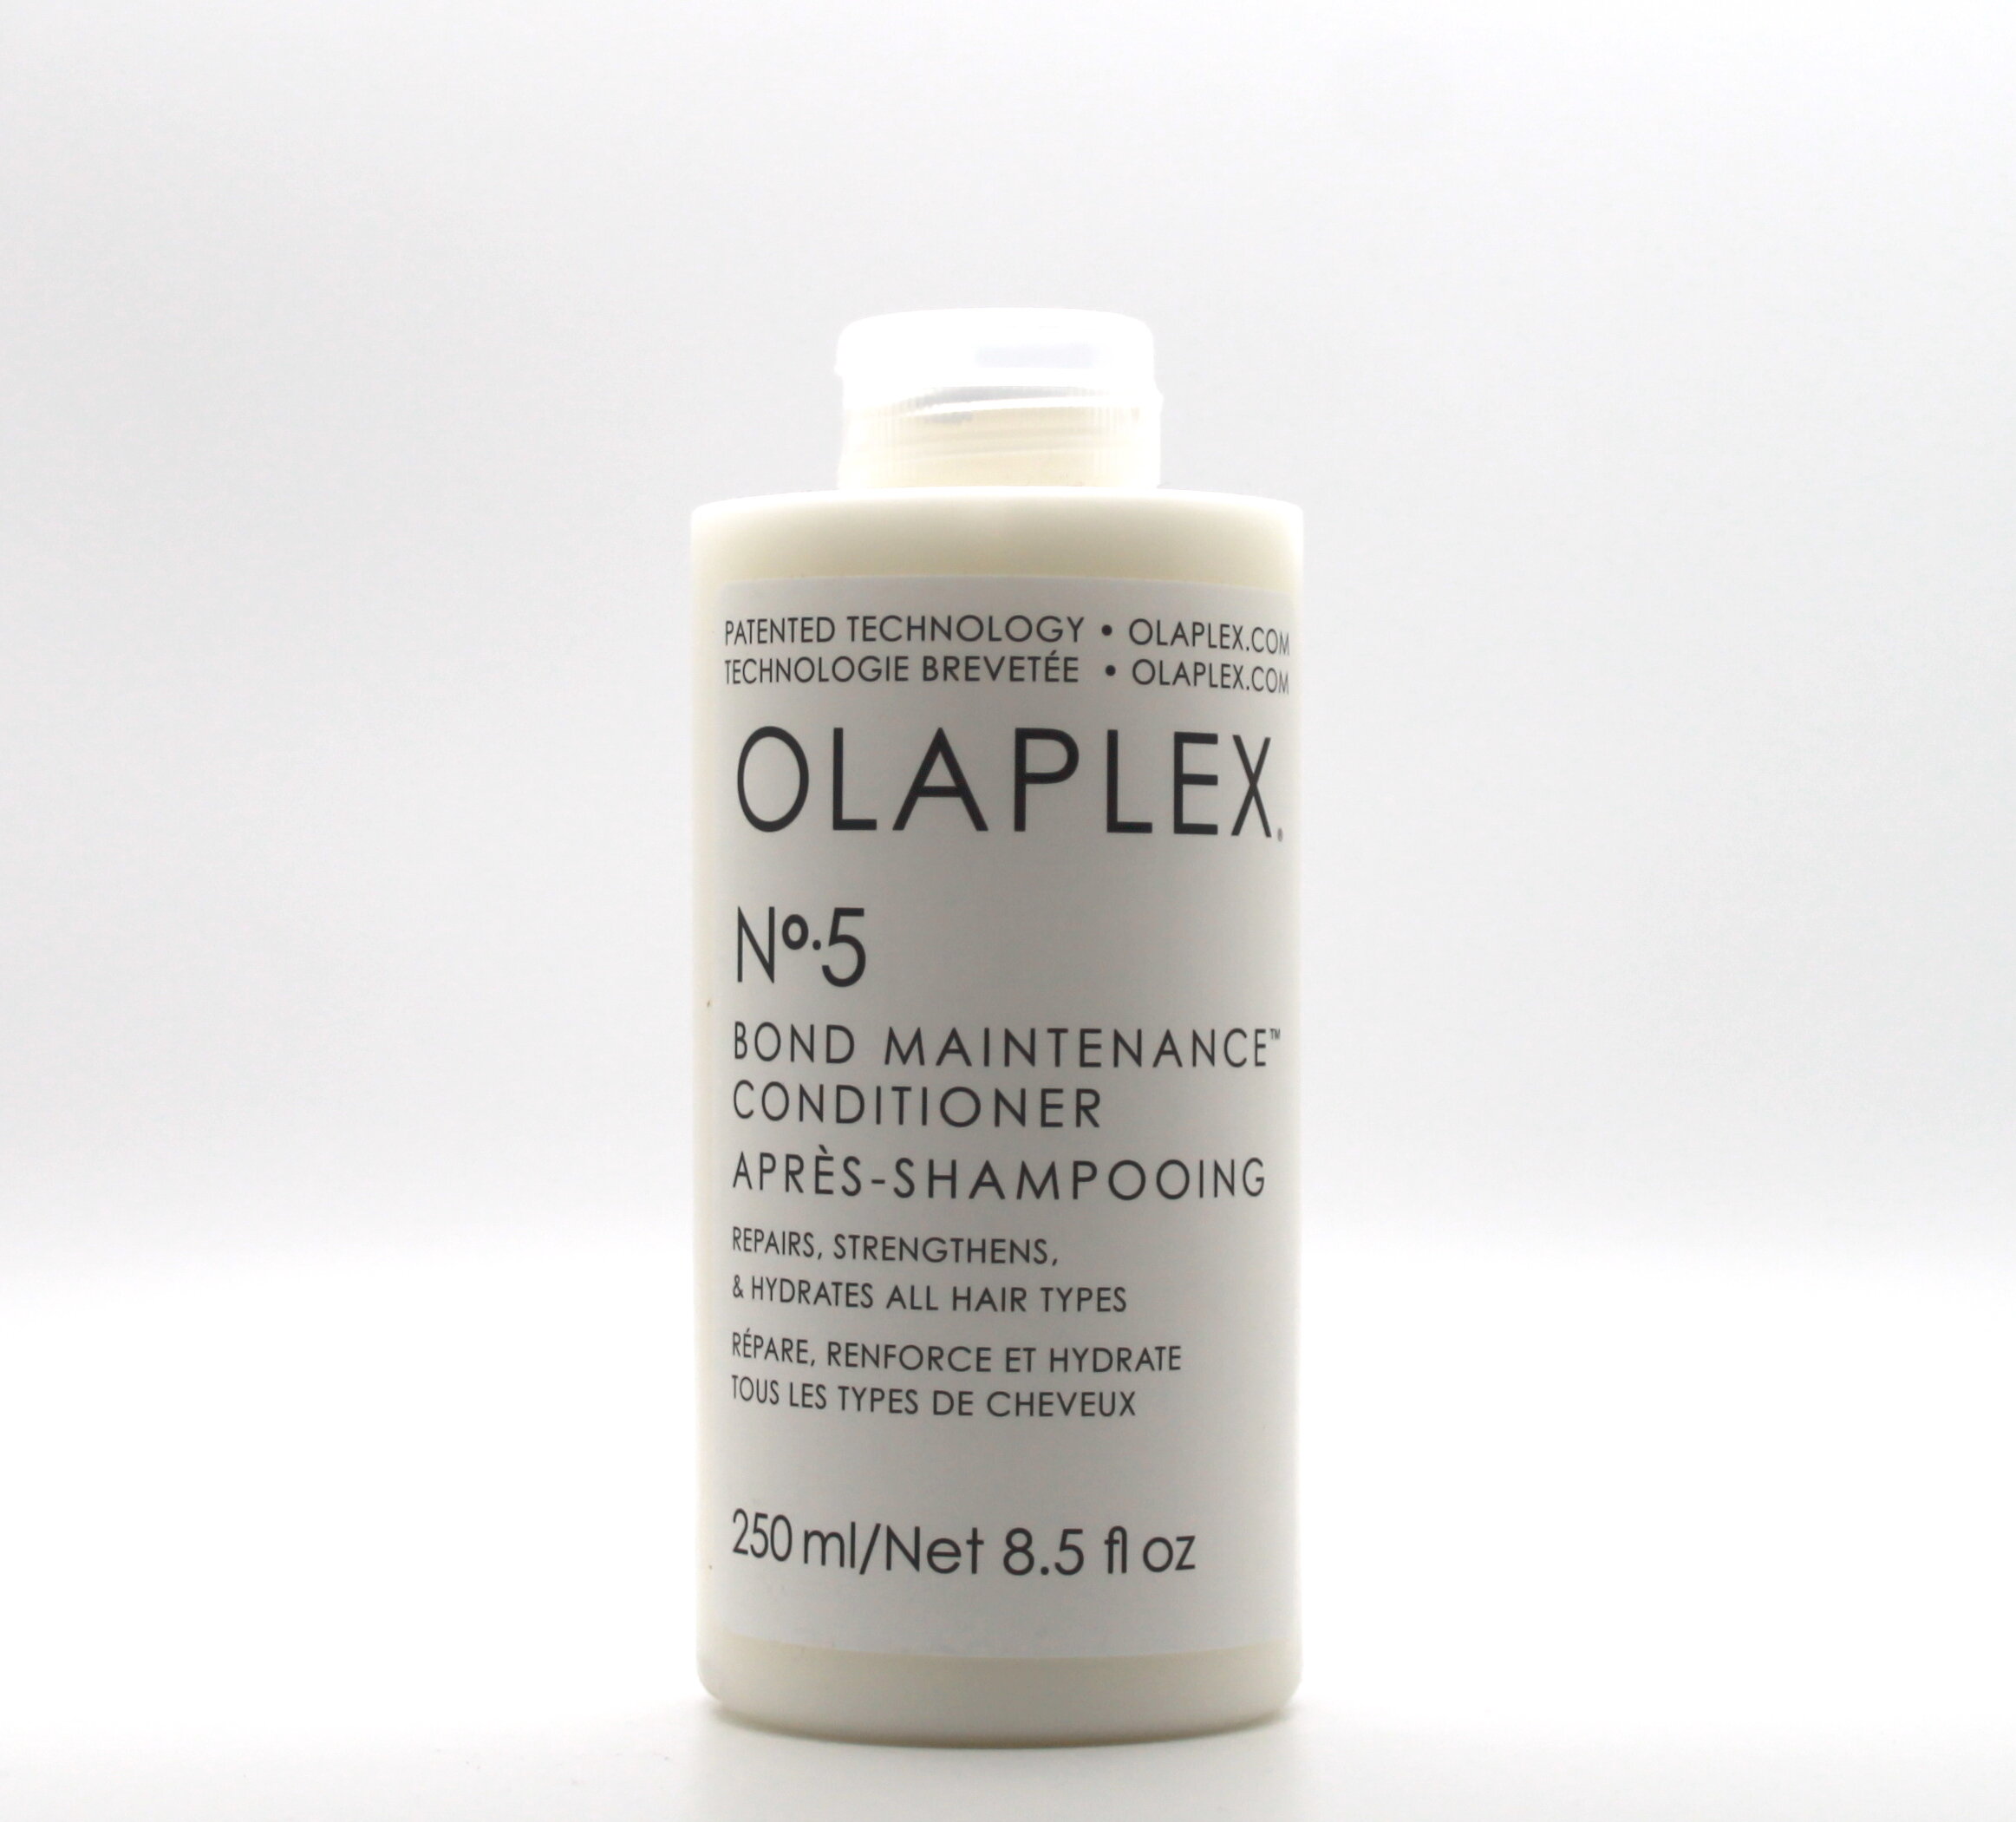 OLAPLEX #5 (conditioner)